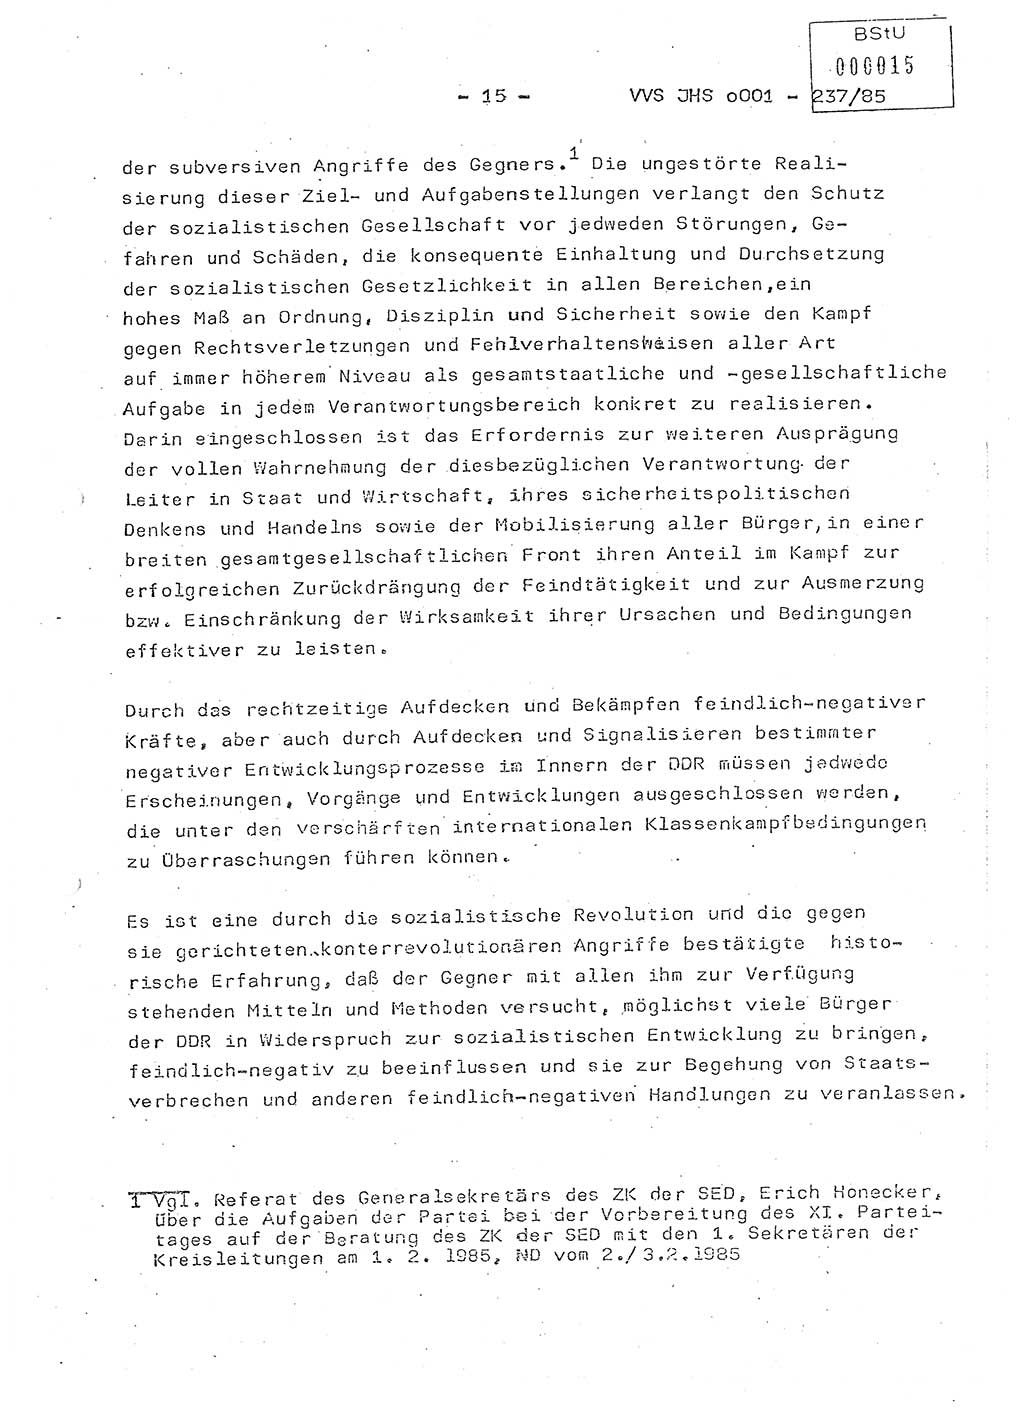 Dissertation Oberstleutnant Peter Jakulski (JHS), Oberstleutnat Christian Rudolph (HA Ⅸ), Major Horst Böttger (ZMD), Major Wolfgang Grüneberg (JHS), Major Albert Meutsch (JHS), Ministerium für Staatssicherheit (MfS) [Deutsche Demokratische Republik (DDR)], Juristische Hochschule (JHS), Vertrauliche Verschlußsache (VVS) o001-237/85, Potsdam 1985, Seite 15 (Diss. MfS DDR JHS VVS o001-237/85 1985, S. 15)